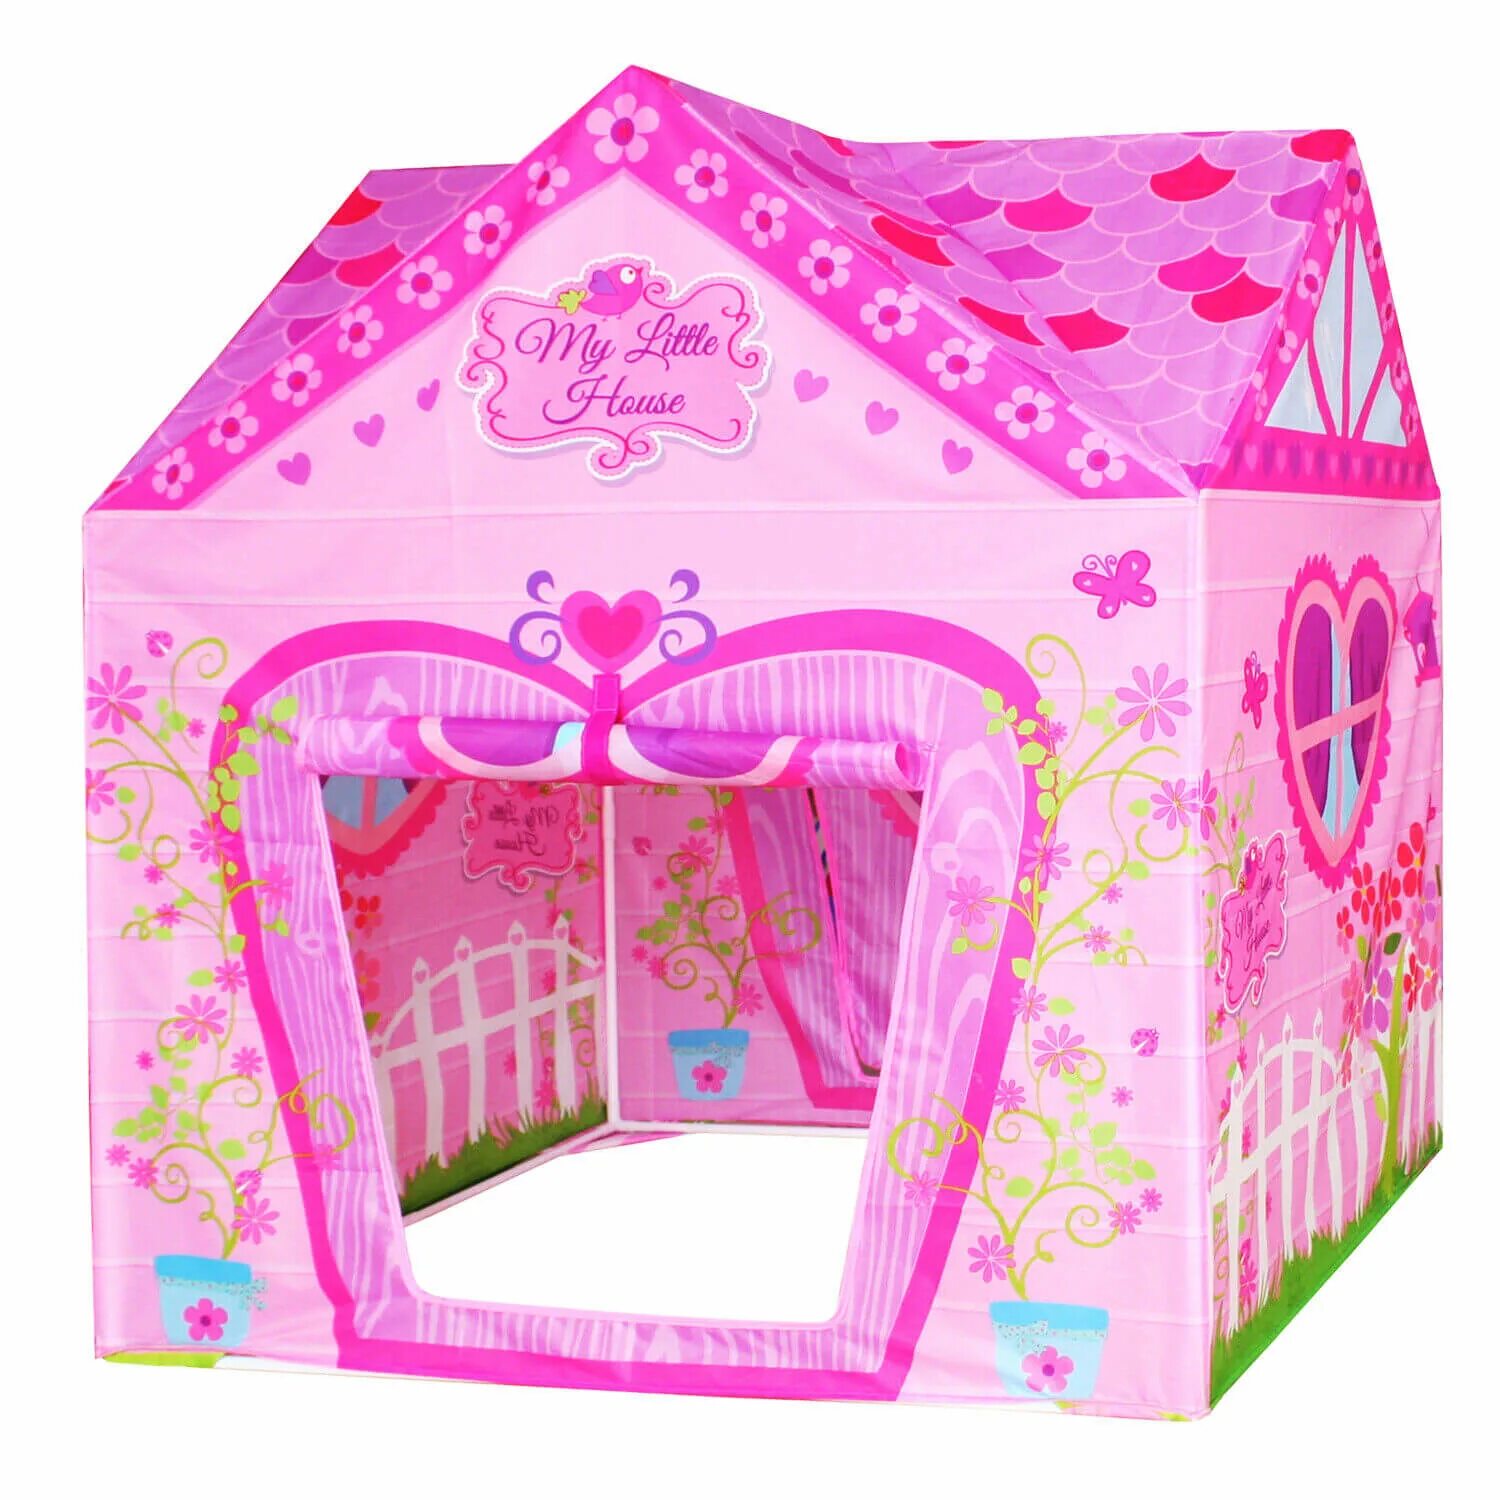 Палатка игровой домик "дом my little House. Палатка ELC игровой домик принцессы. Палатка Yako замок принцессы m7128. Игровой домик-палатка "замок для принцессы", 102 см схема.